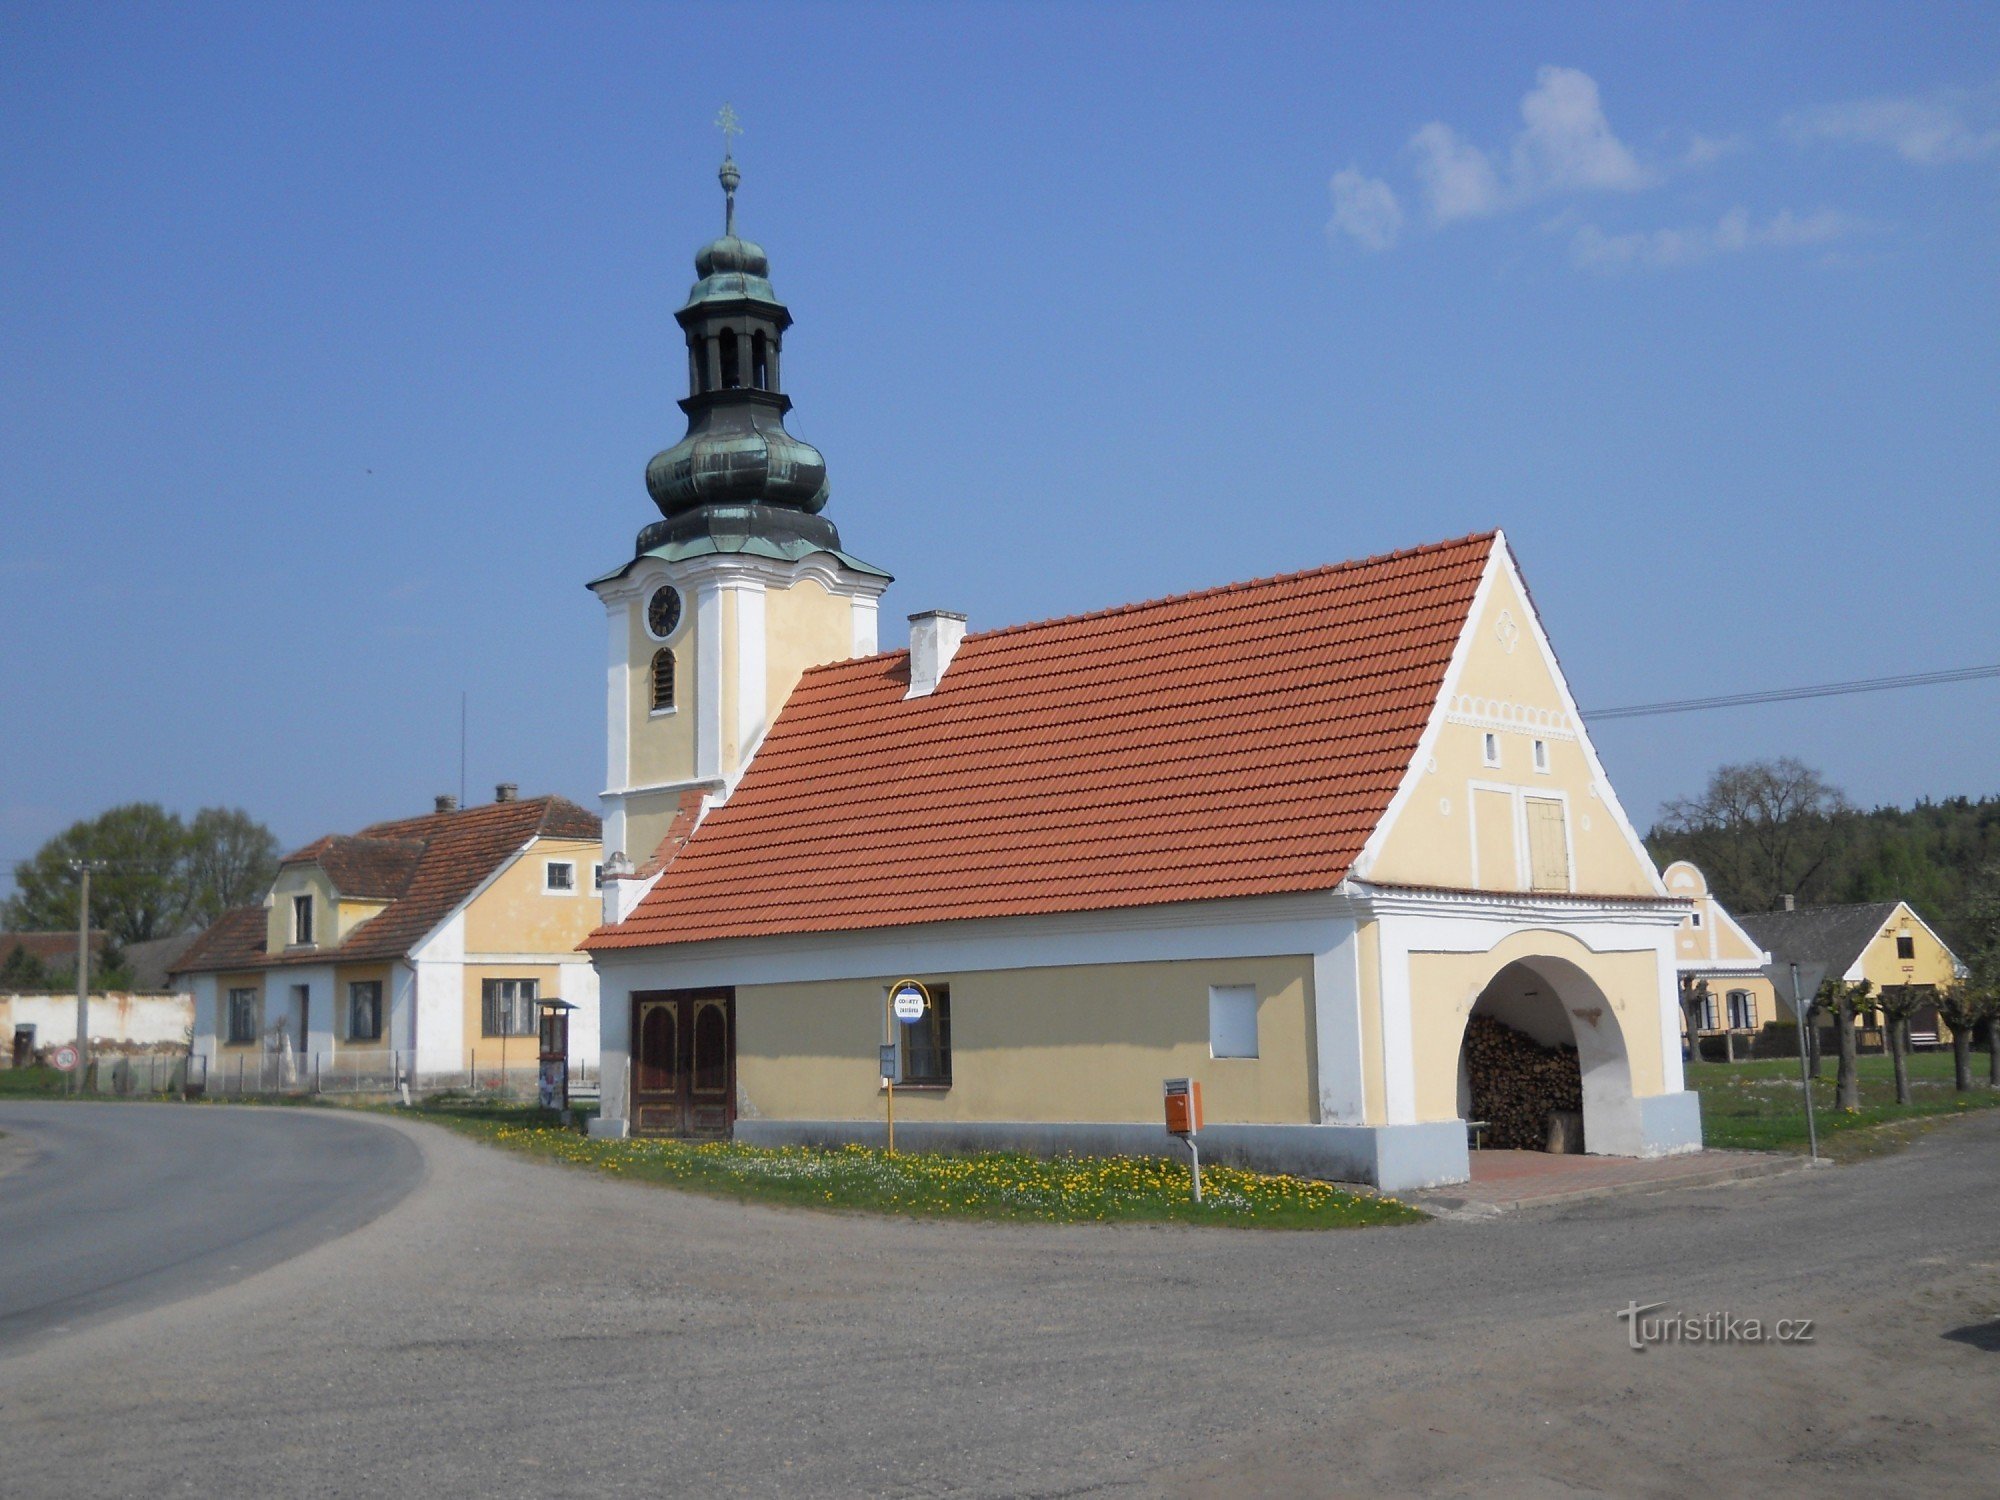 Svinky - capela com ex forja